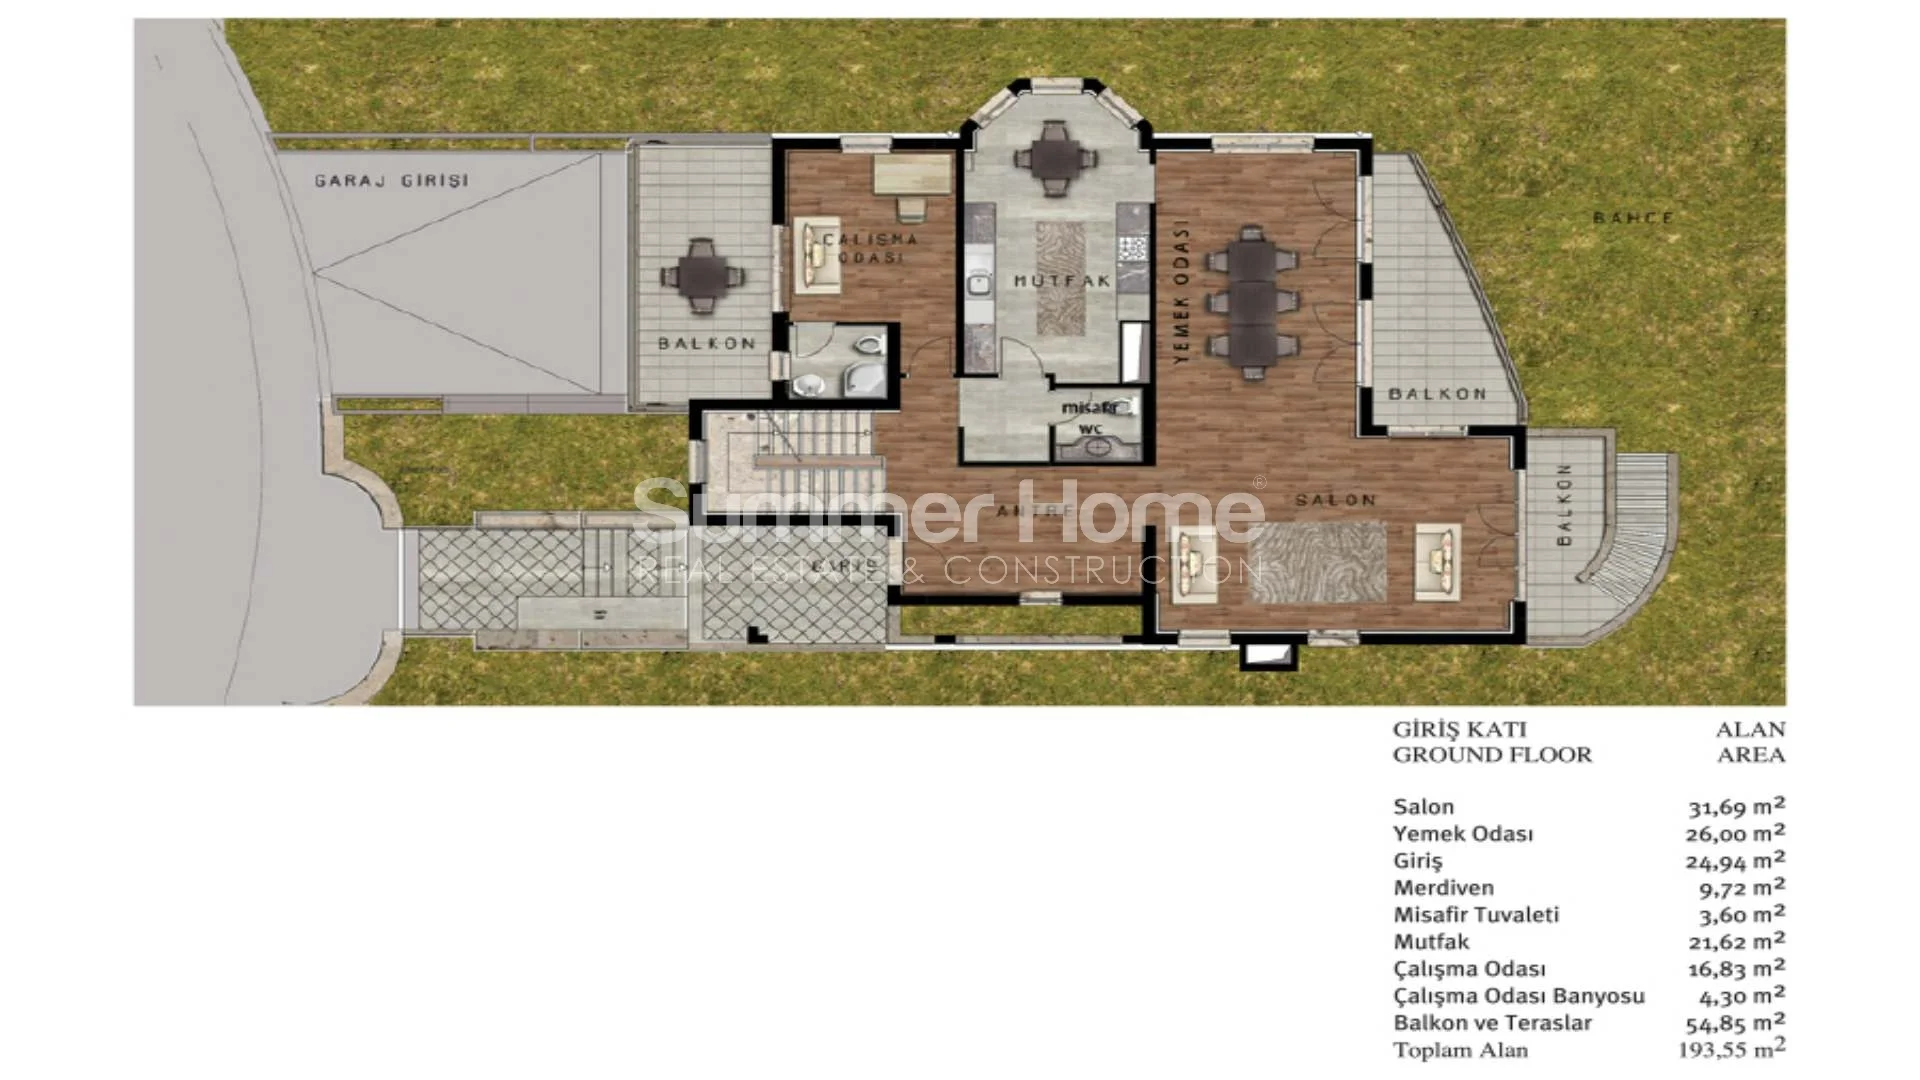 Luxurious Triplex Villas in Beylikduzu Plan - 37